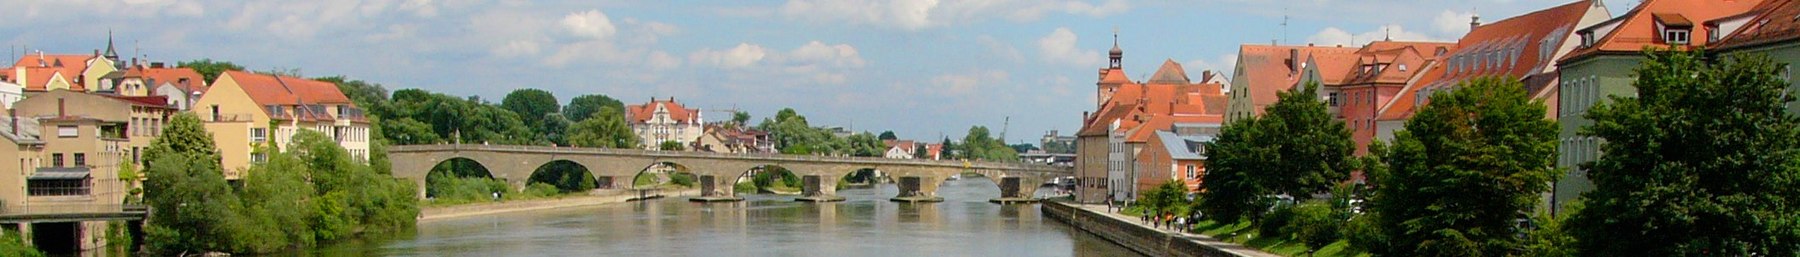 WV -banner Opper -Pfalz Donau in Regensburg.jpg